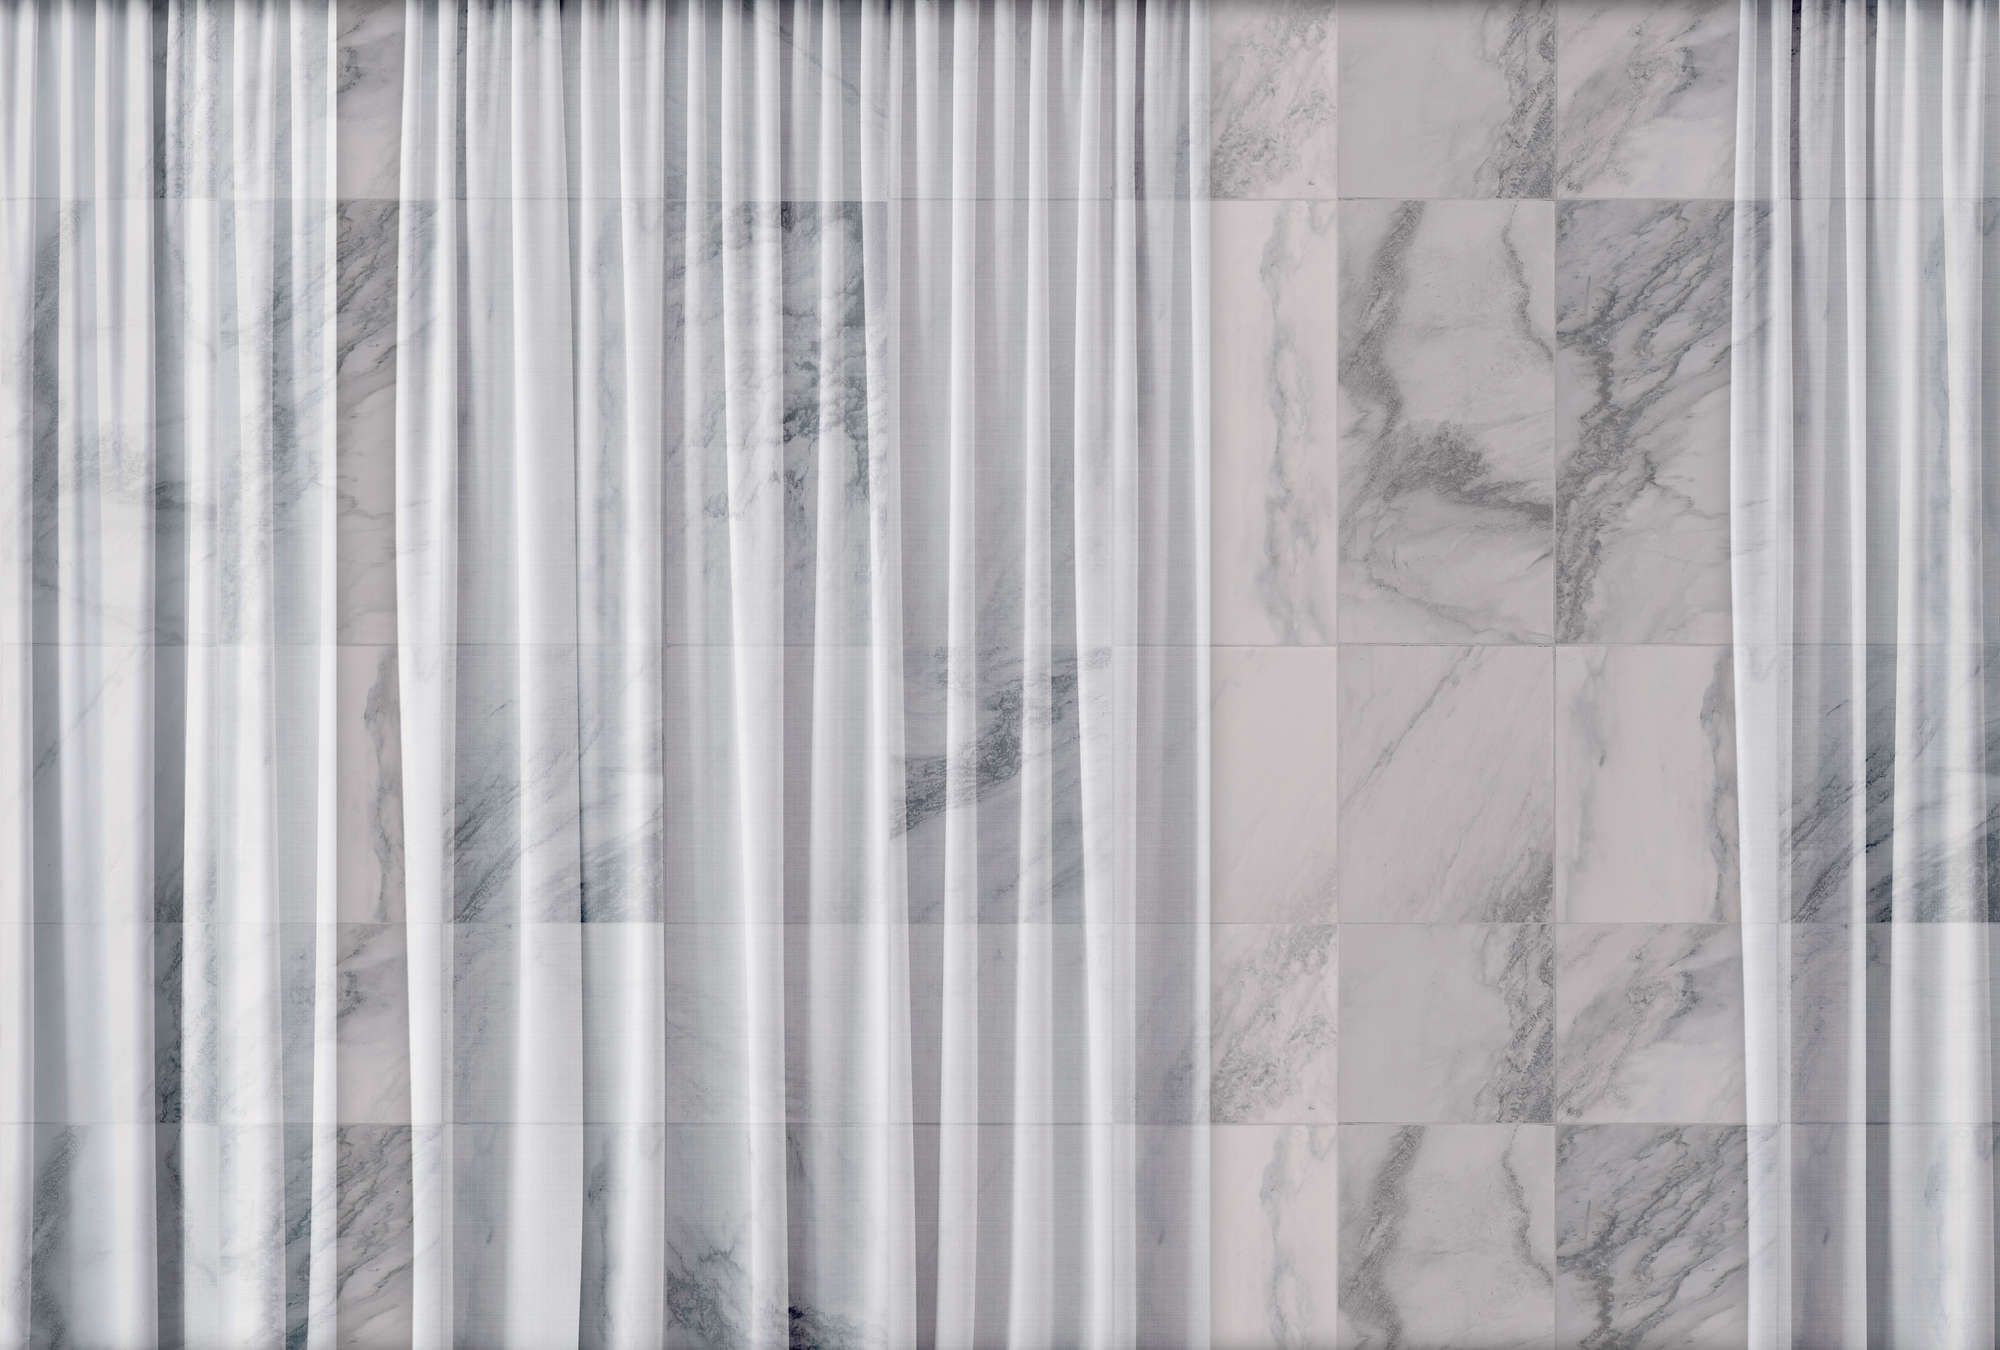             Fotomurali »nova 1« - Tenda bianca discreta che cade davanti alla parete di marmo - Materiali non tessuto opaco e liscio
        